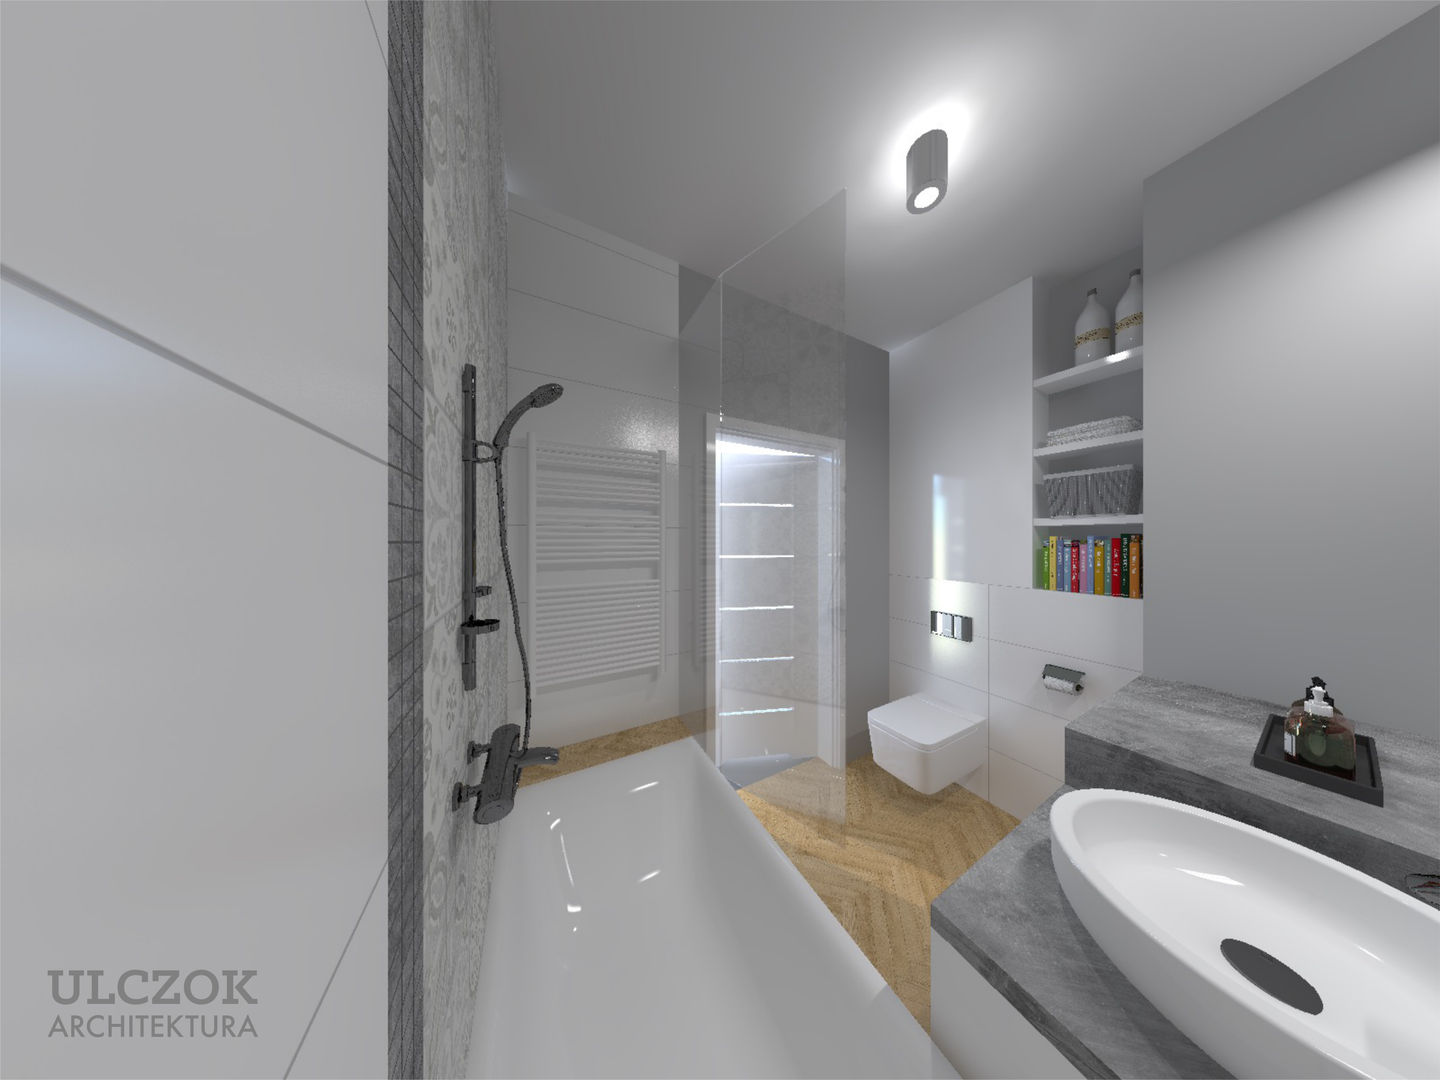 Projekt małej łazienki, Ulczok Architektura Ulczok Architektura Moderne badkamers